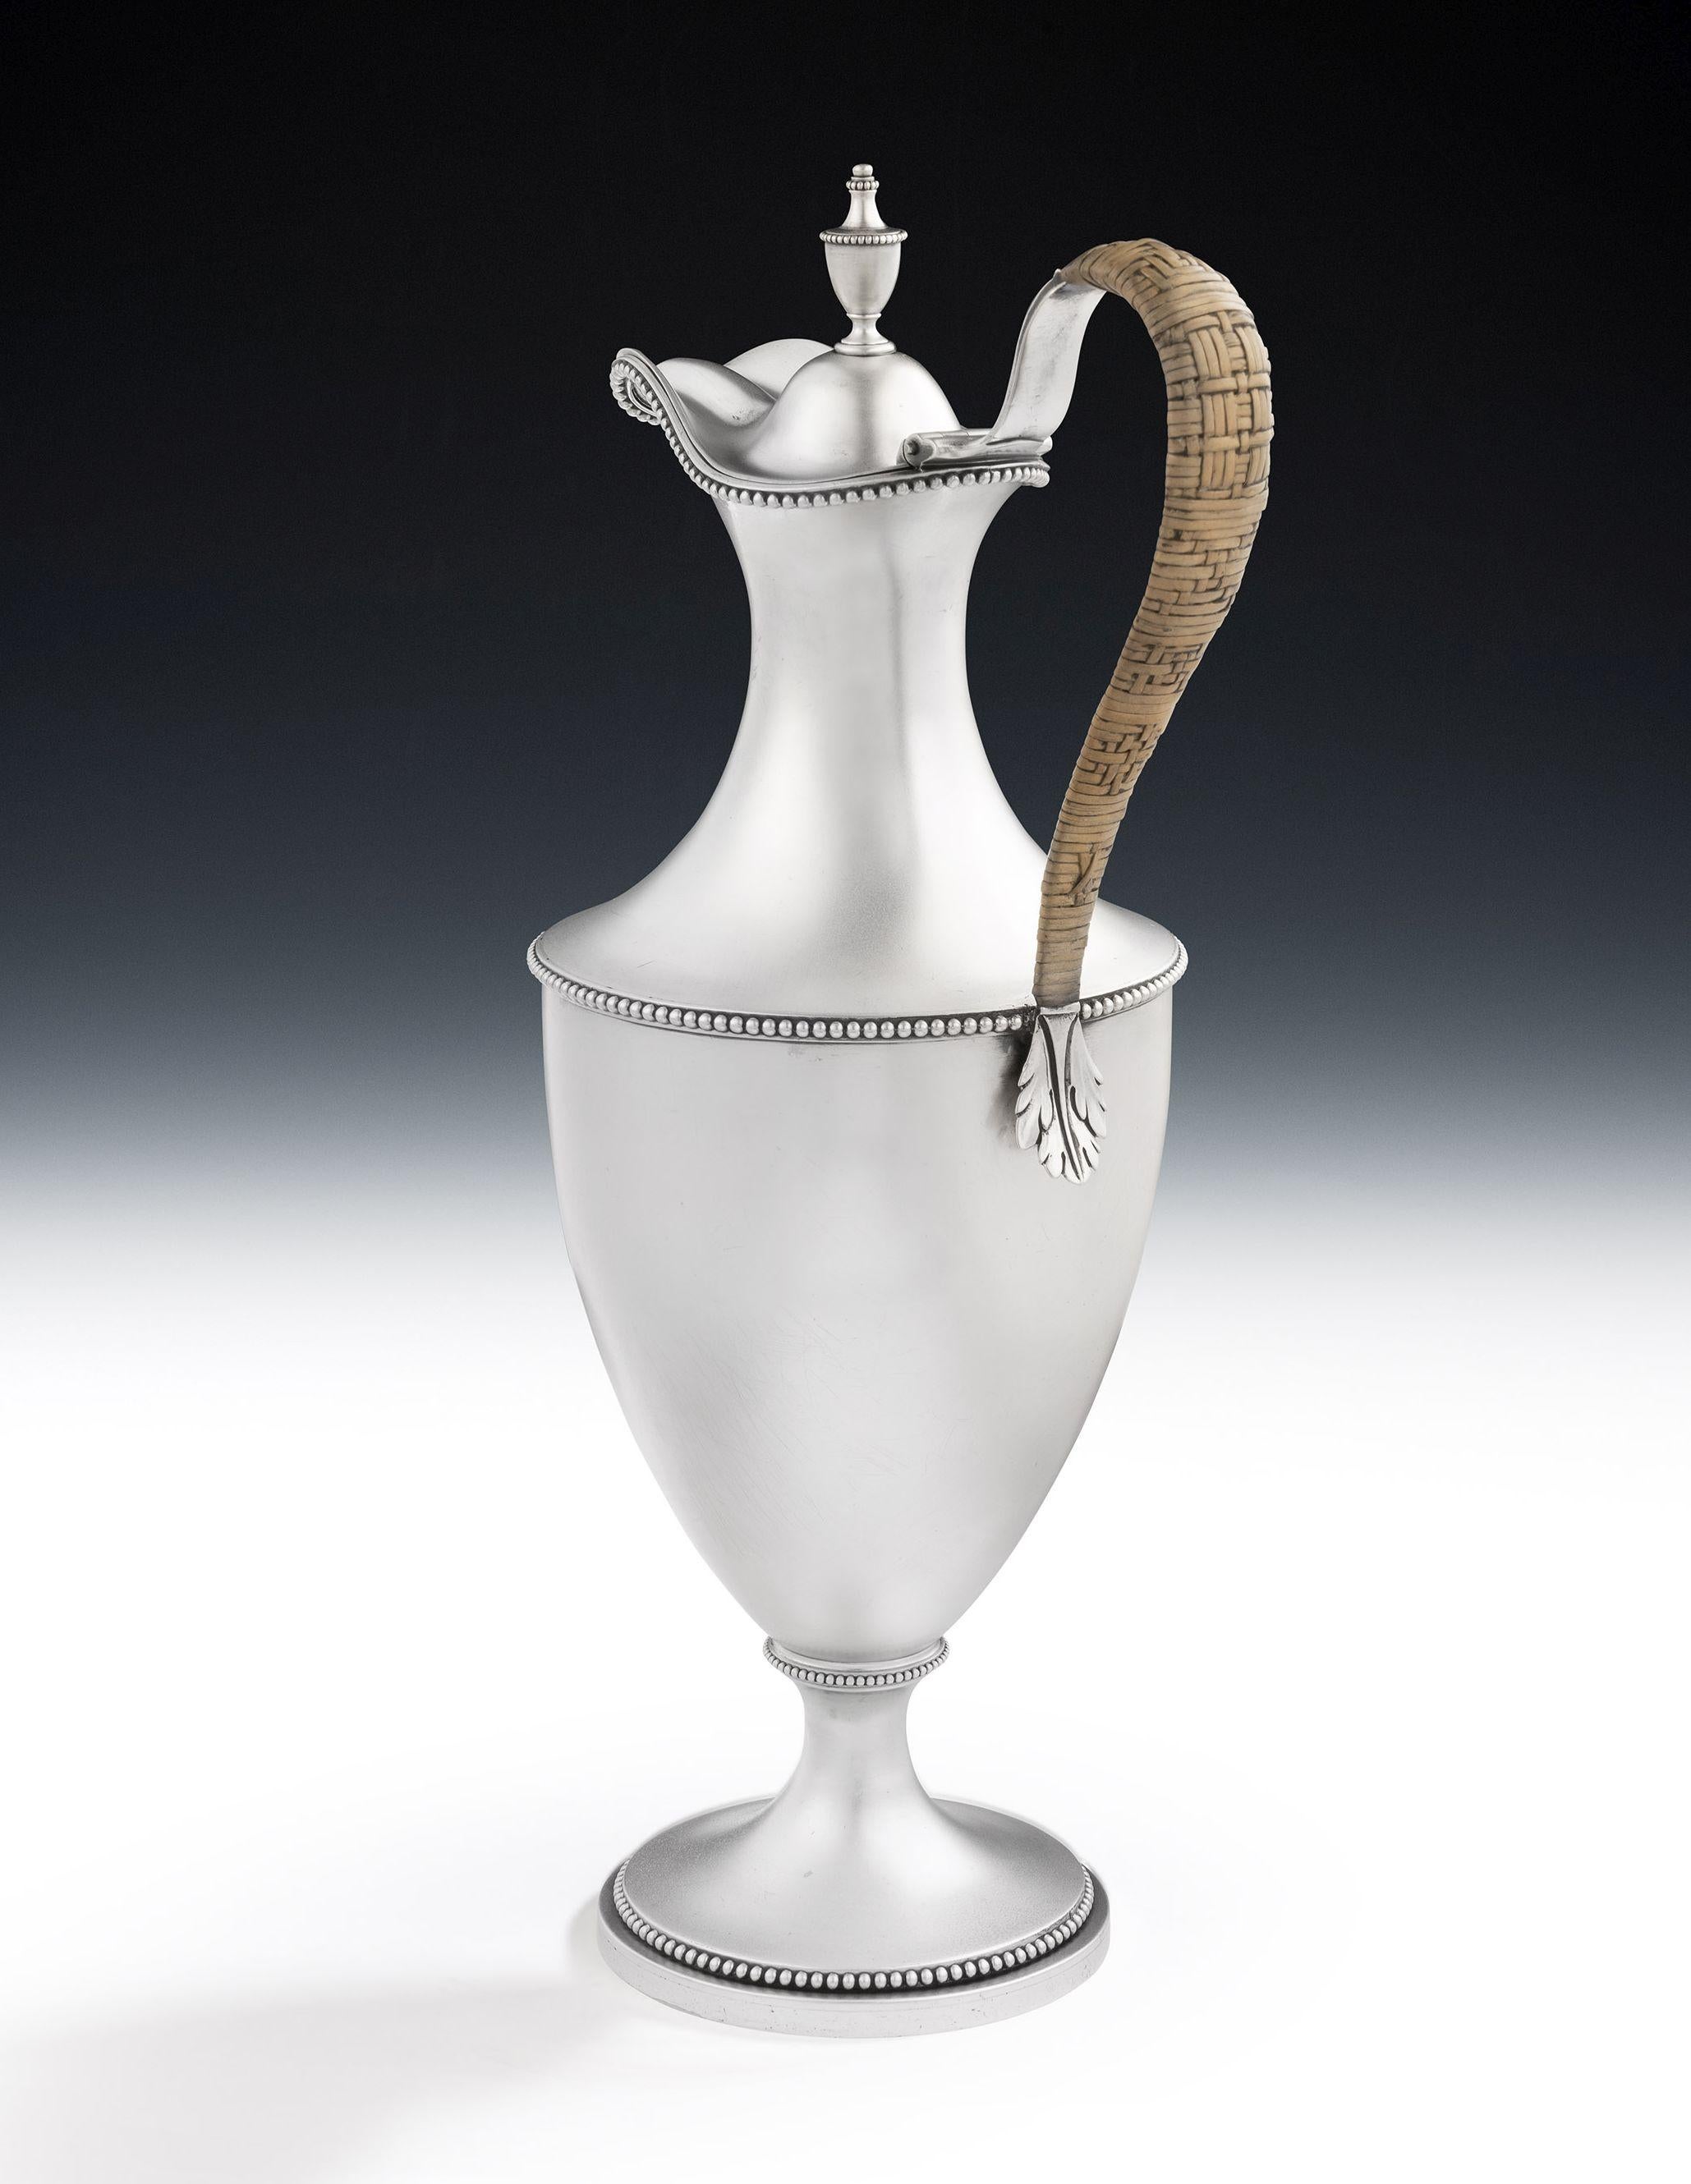 Très belle aiguière à eau et à vin de George III fabriquée à Londres en 1778 par Makepeace & Carter.

L'aiguière est de forme néoclassique et repose sur un pied circulaire bombé.  Le corps principal, en forme de vase, est décoré de diverses bandes